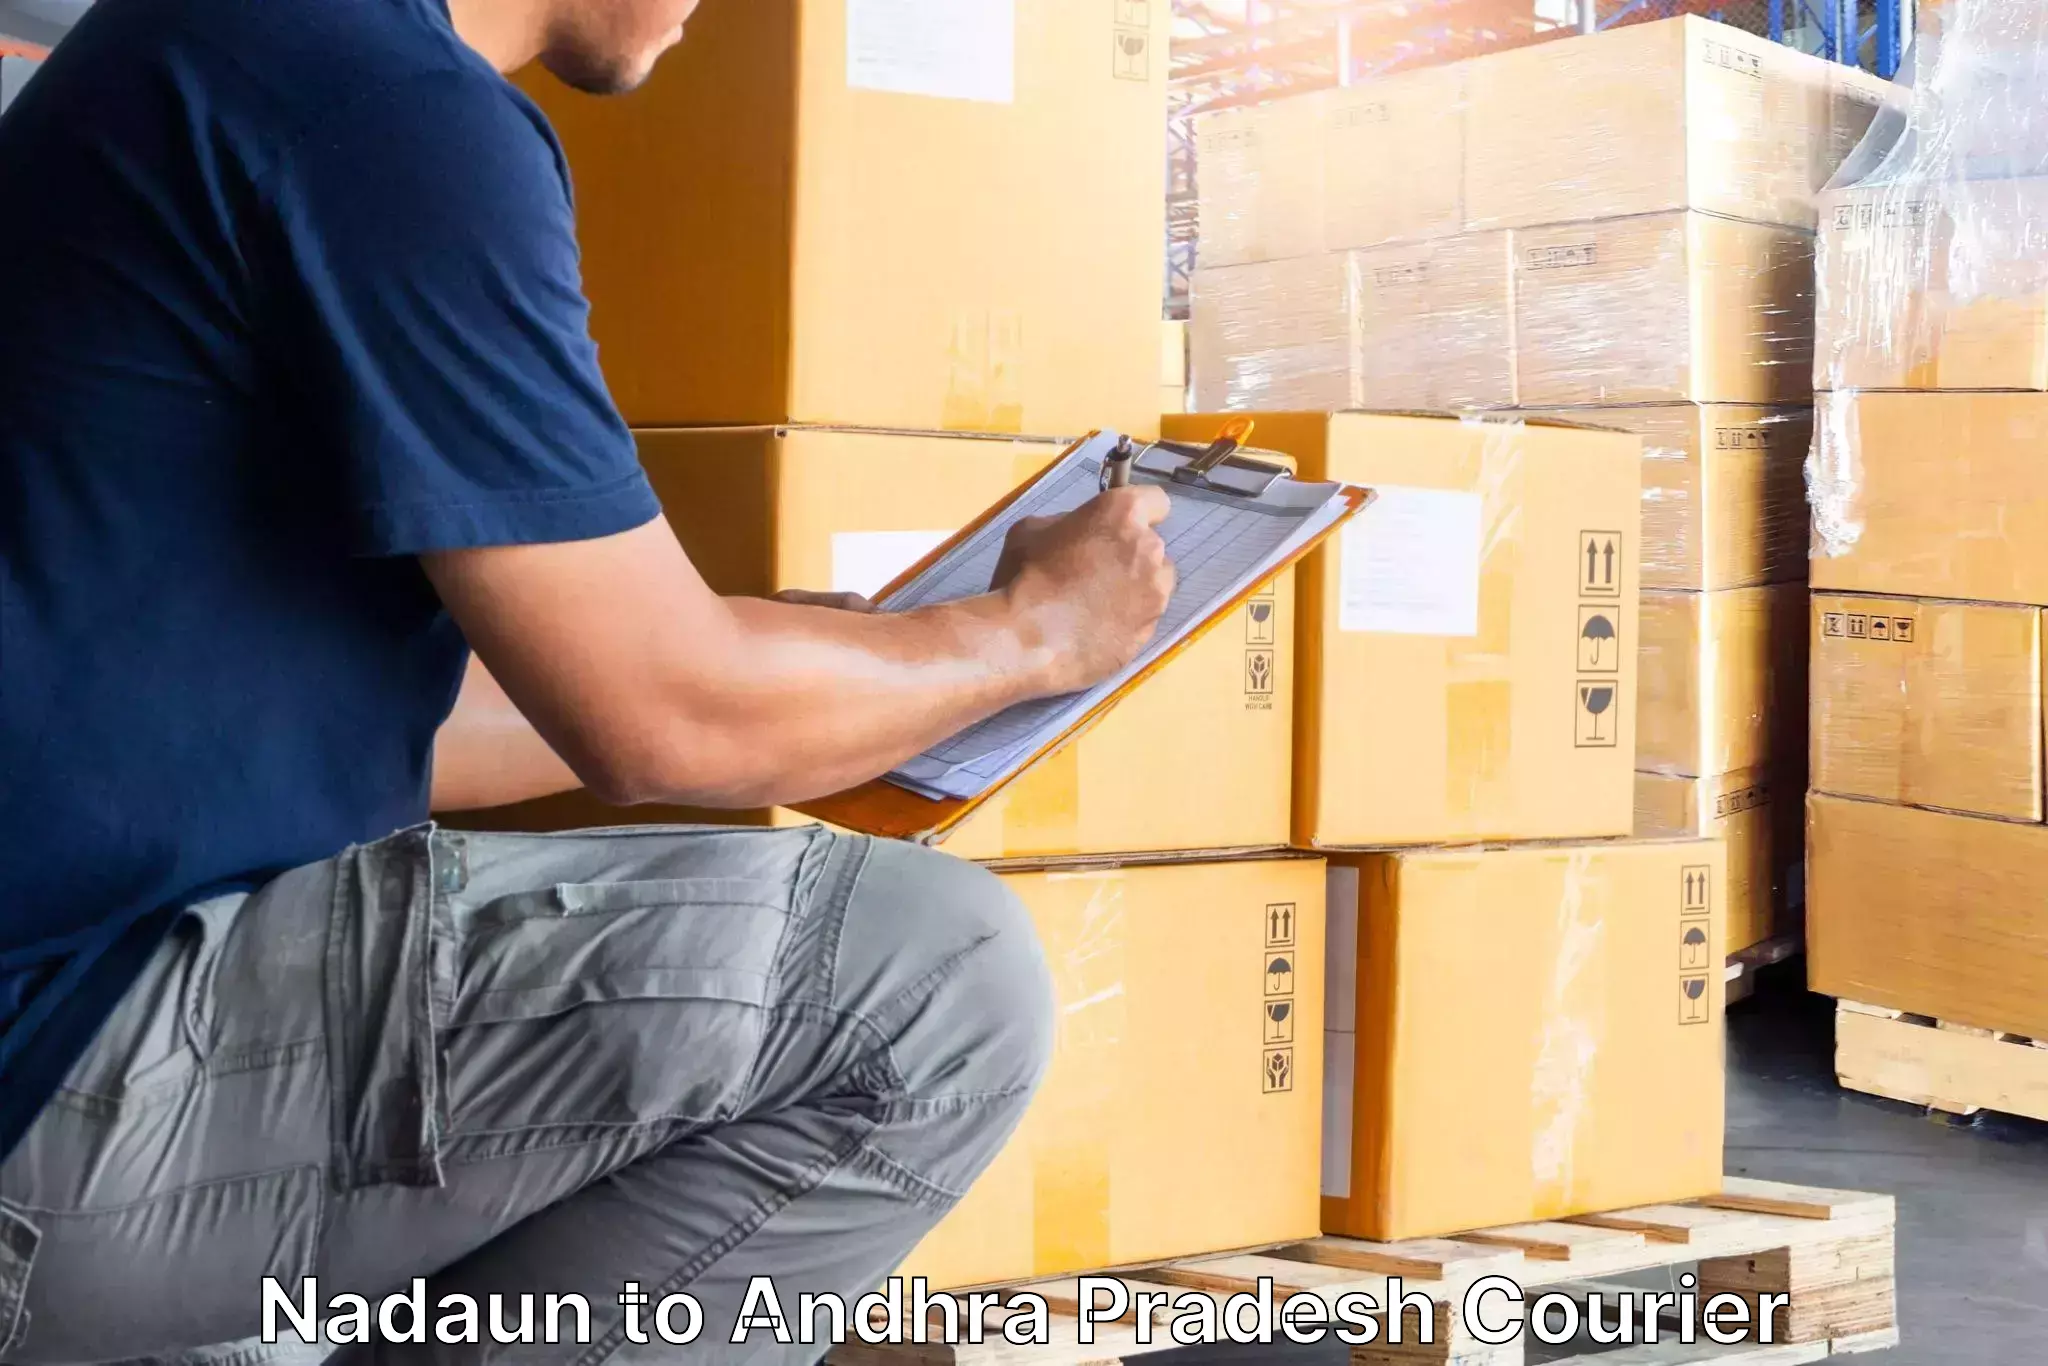 Furniture delivery service Nadaun to Srungavarapukota SKota